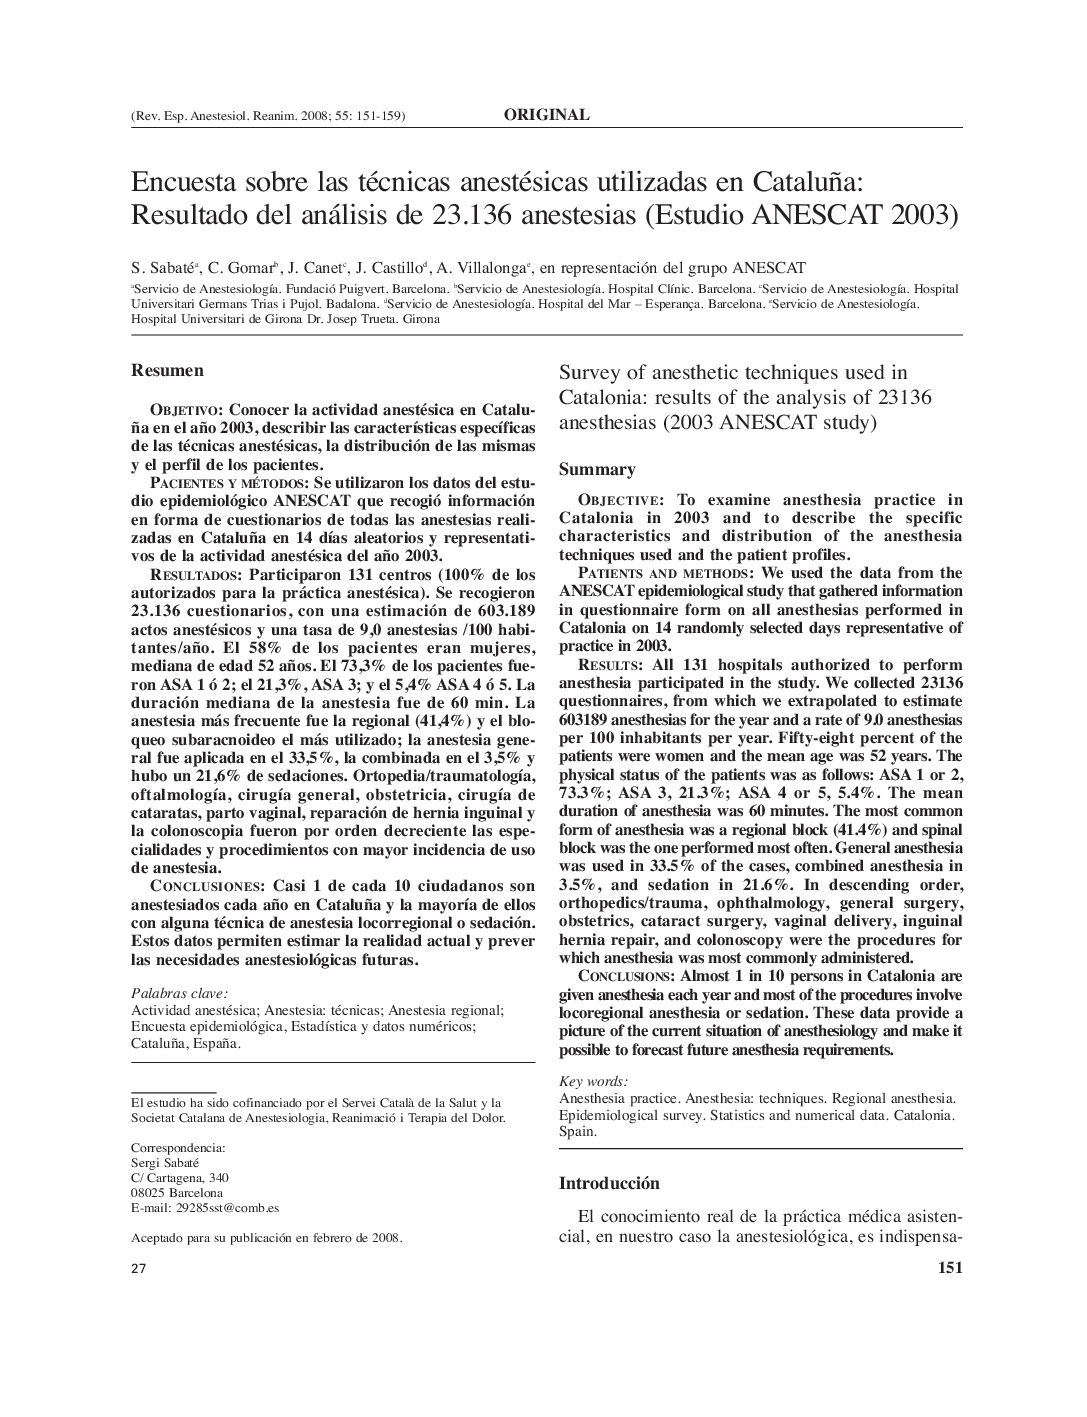 Encuesta sobre las técnicas anestésicas utilizadas en Cataluña: Resultado del análisis de 23.136 anestesias (Estudio ANESCAT 2003)